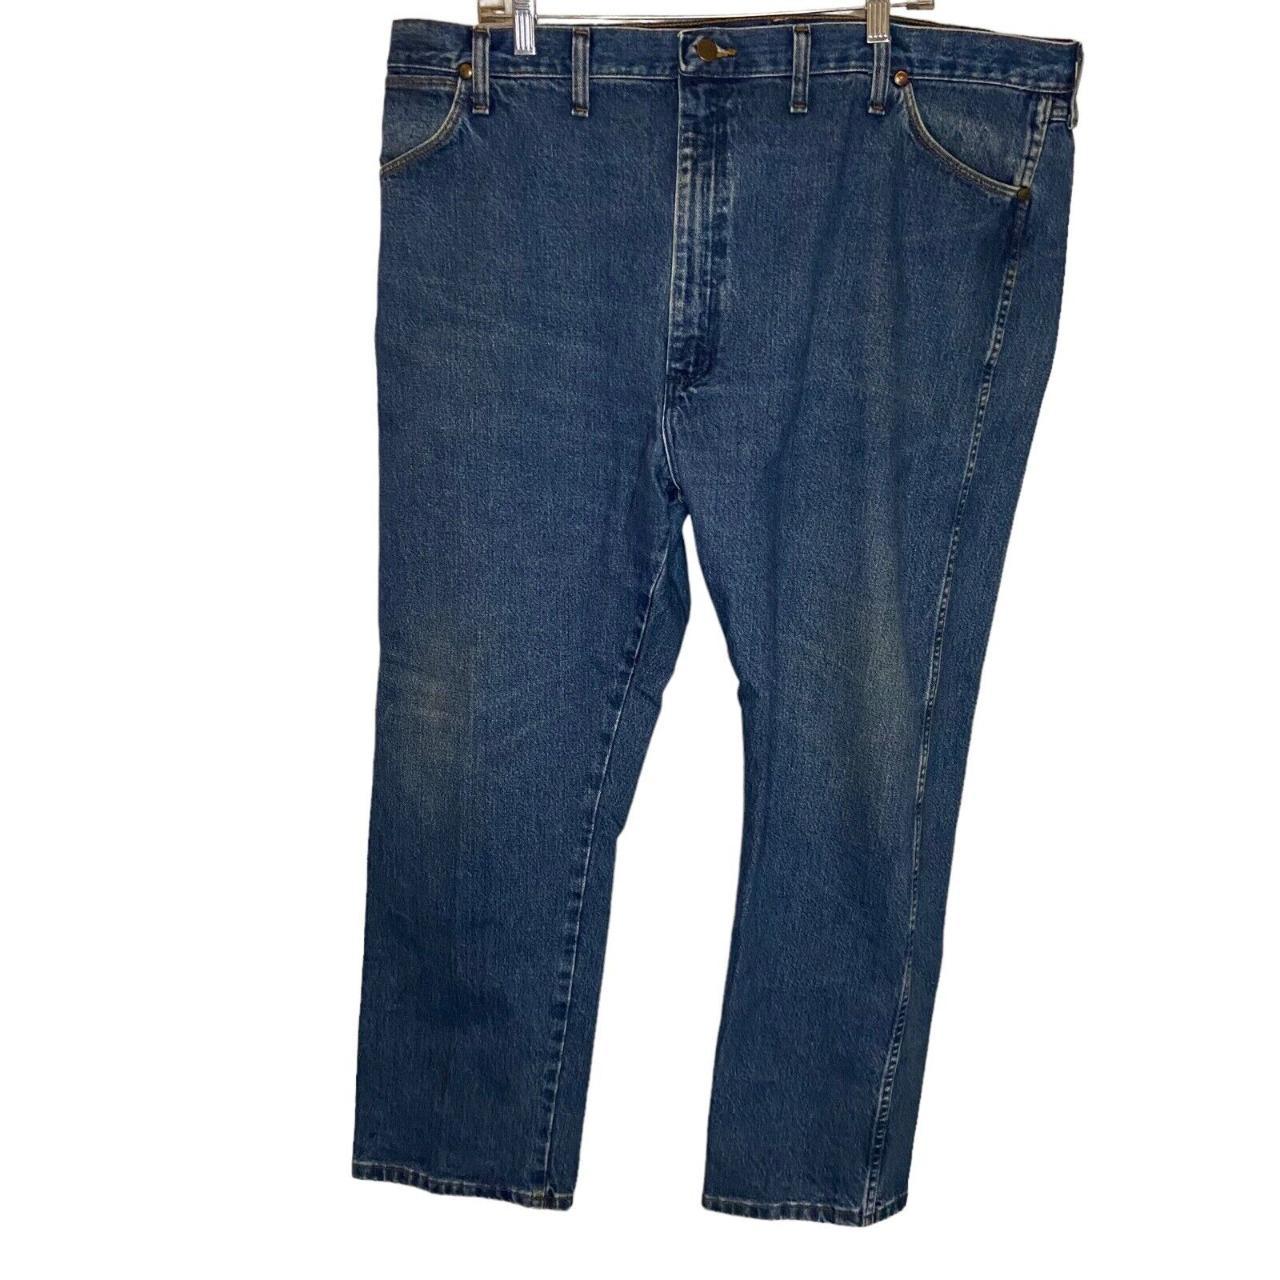 Wrangler Straight leg Jeans Men Size 44 x 30... - Depop